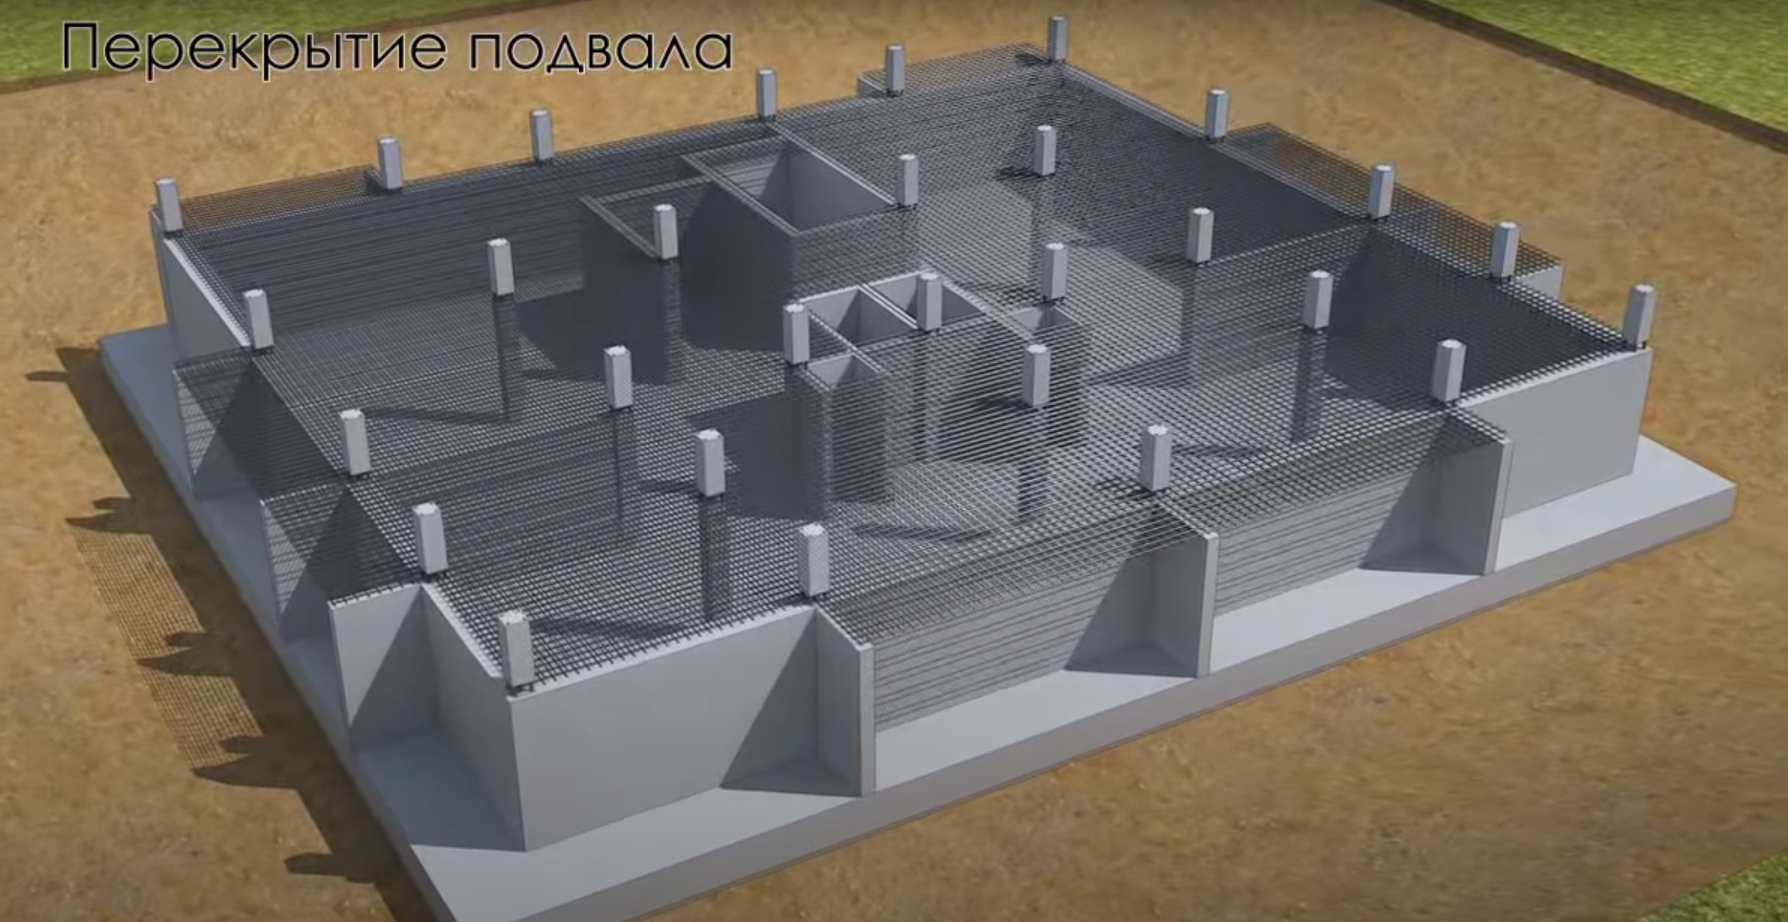 Возведение высотных зданий и сооружений в Москве и области